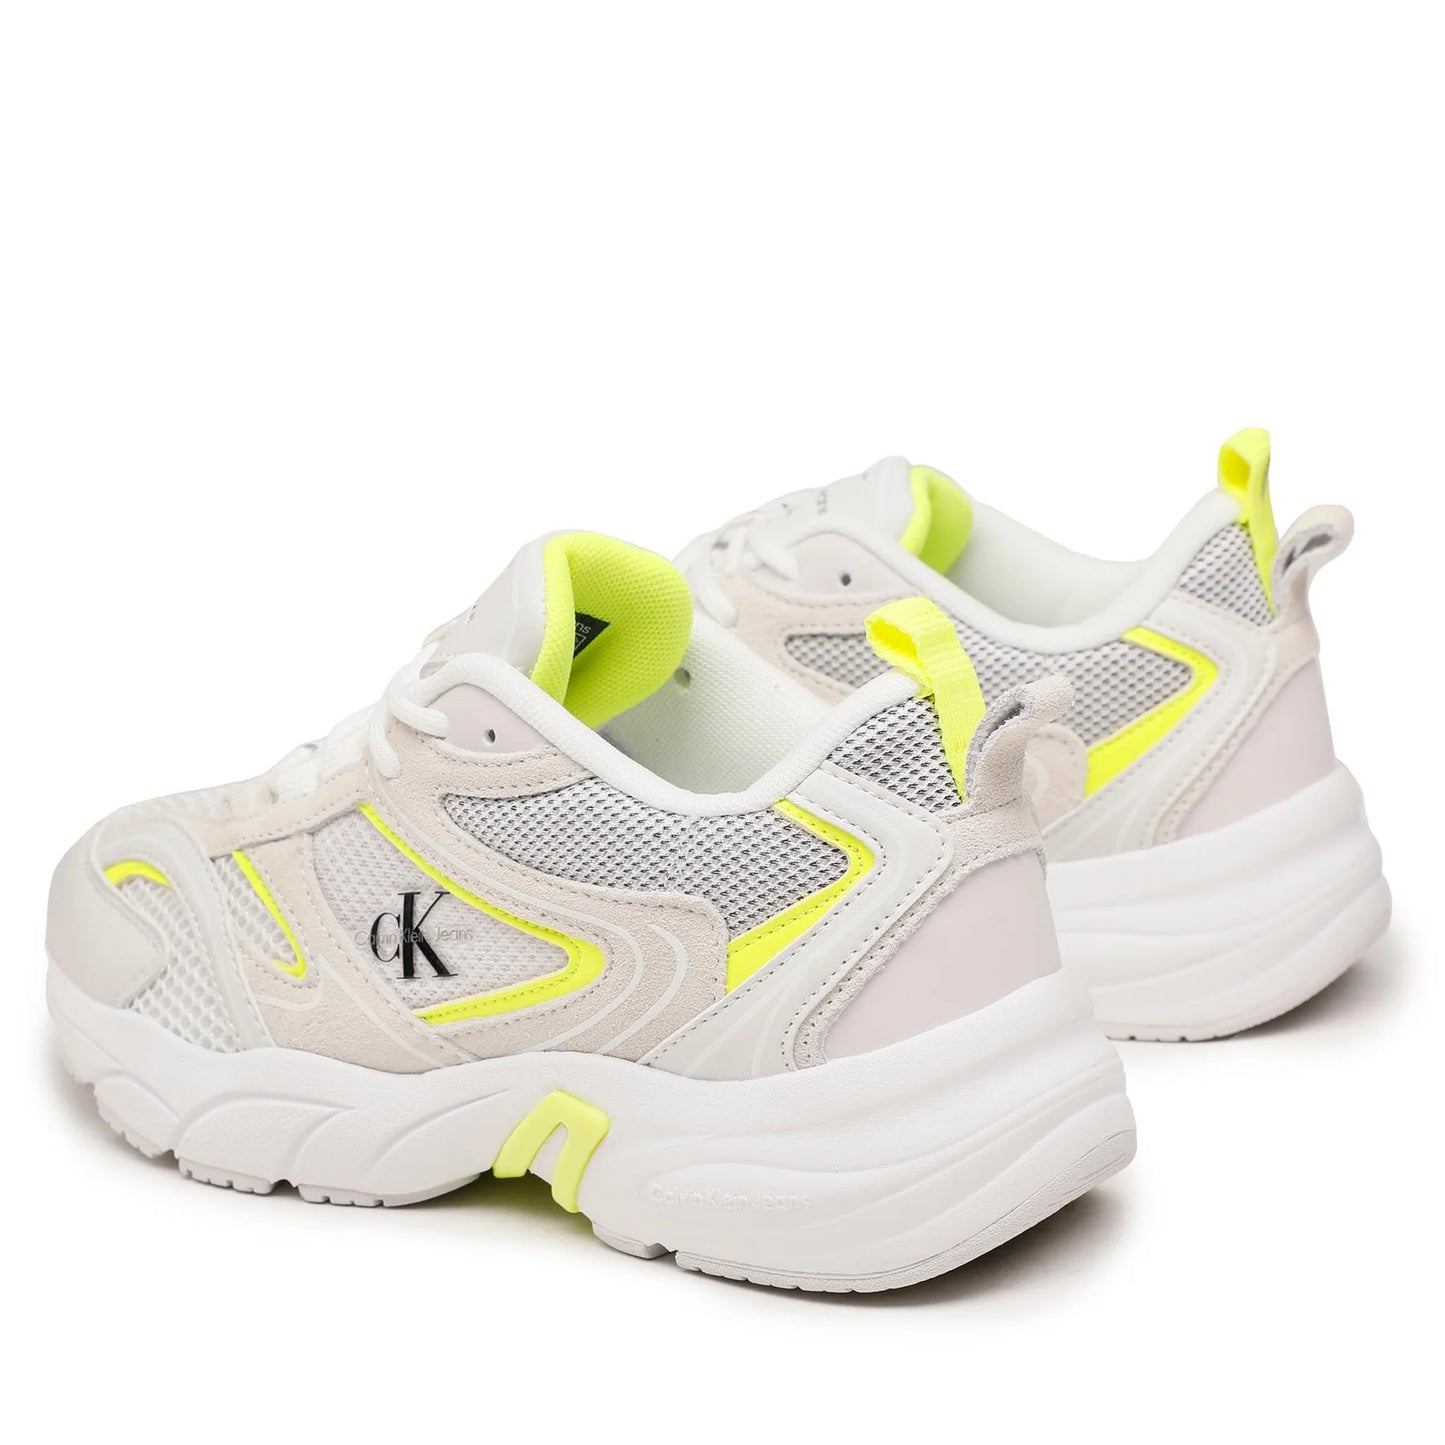 CALVIN KLEIN JEANS Sneakers Retro Tennis  White/Safety Yellow